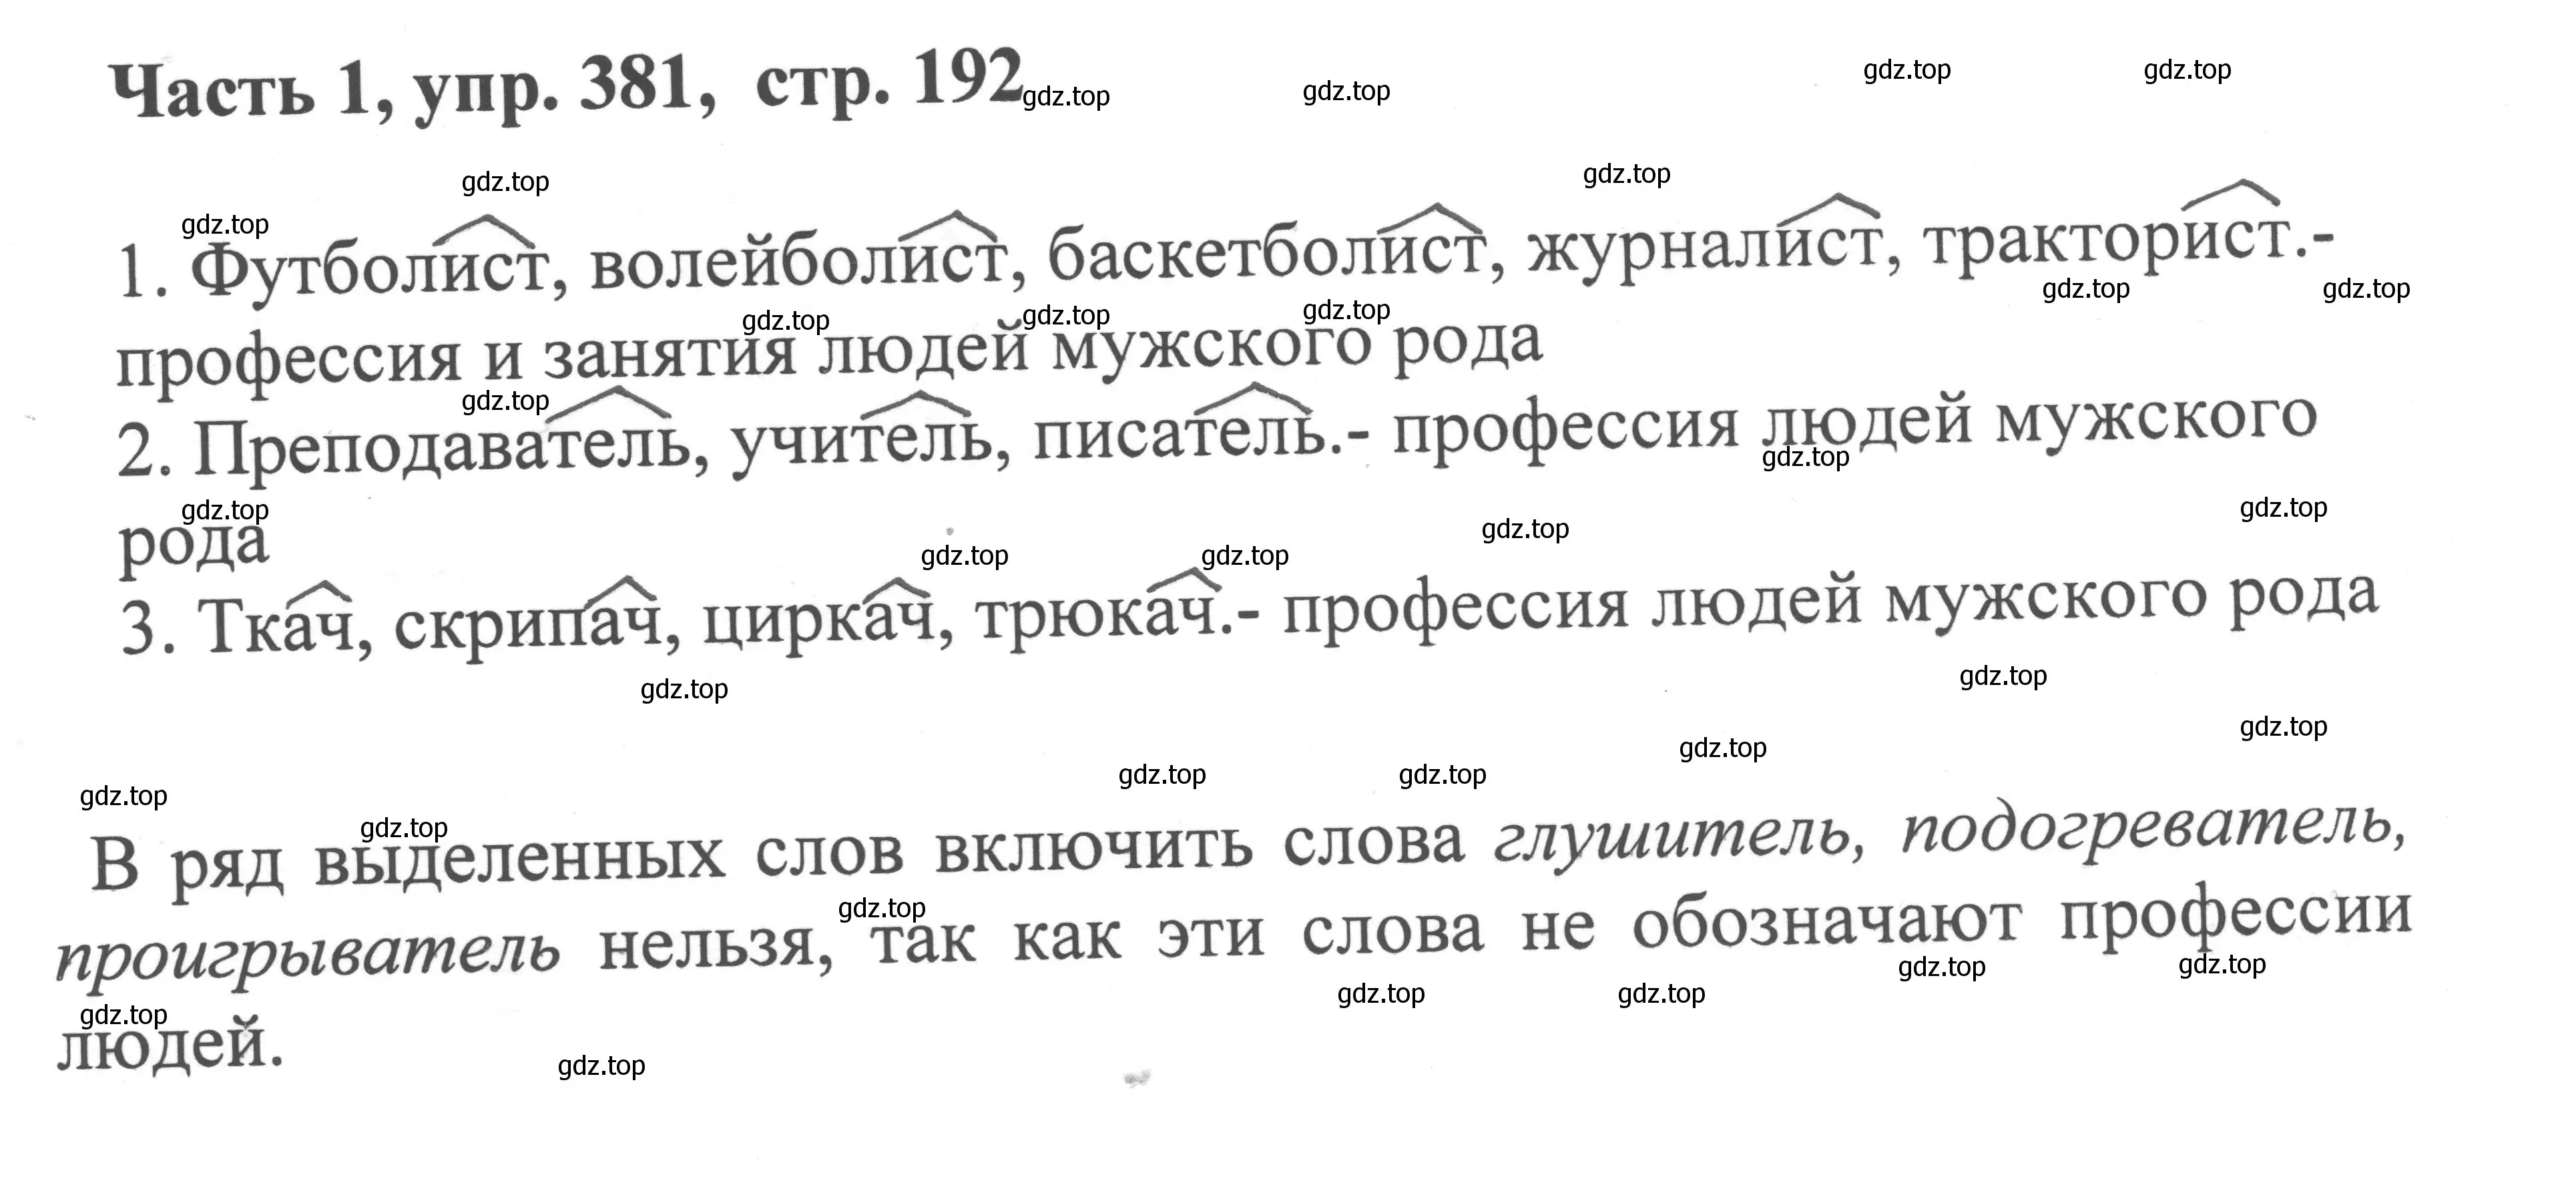 Решение номер 381 (страница 192) гдз по русскому языку 6 класс Баранов, Ладыженская, учебник 1 часть